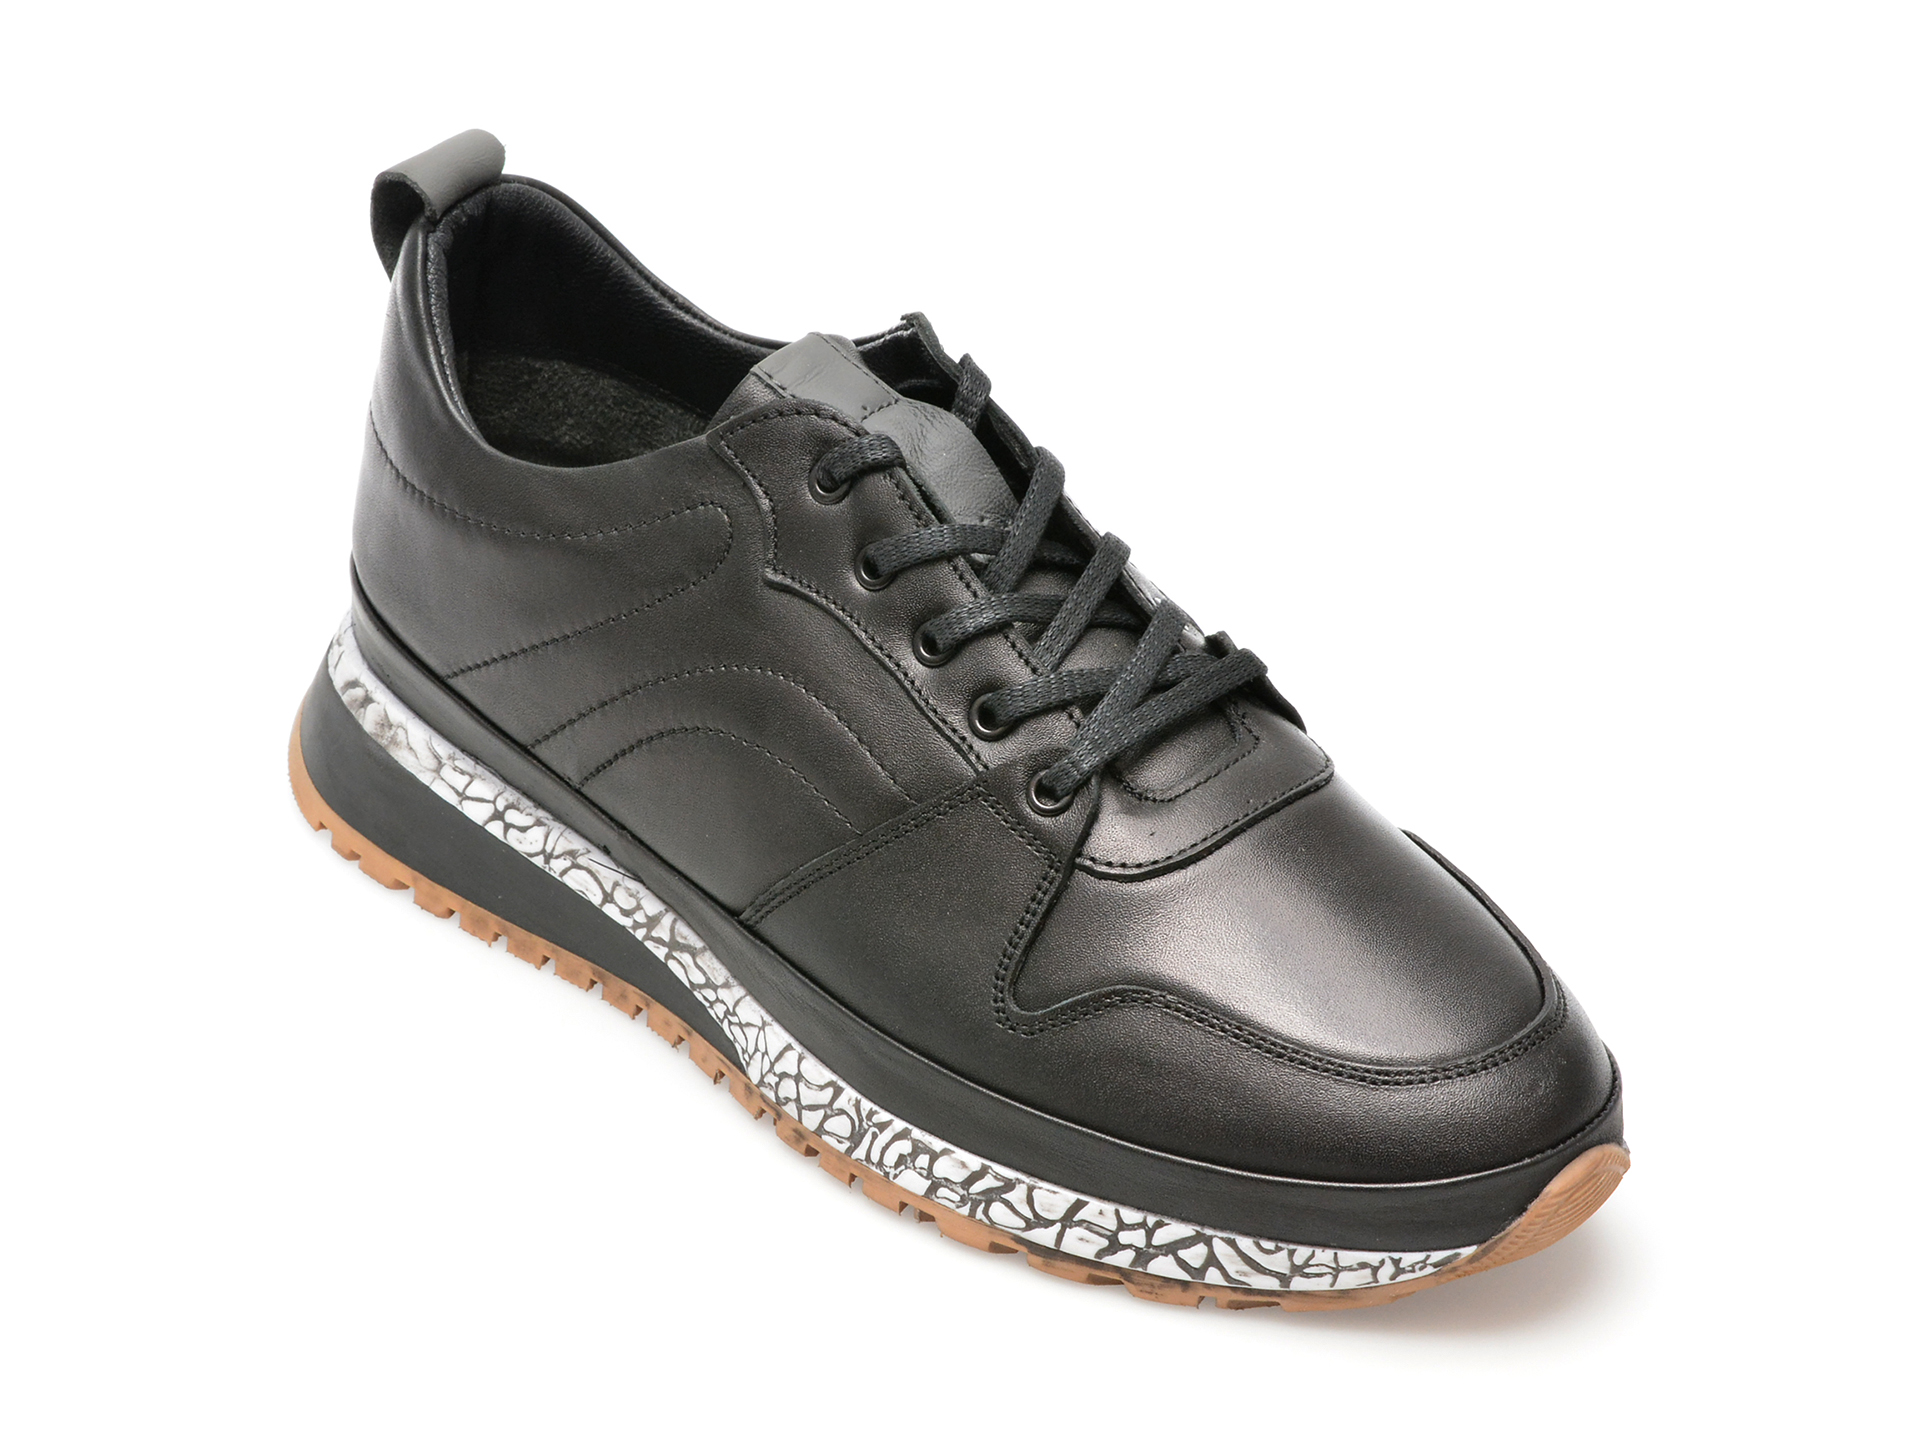 Pantofi AXXELLL negri, NY203, din piele naturala /barbati/pantofi